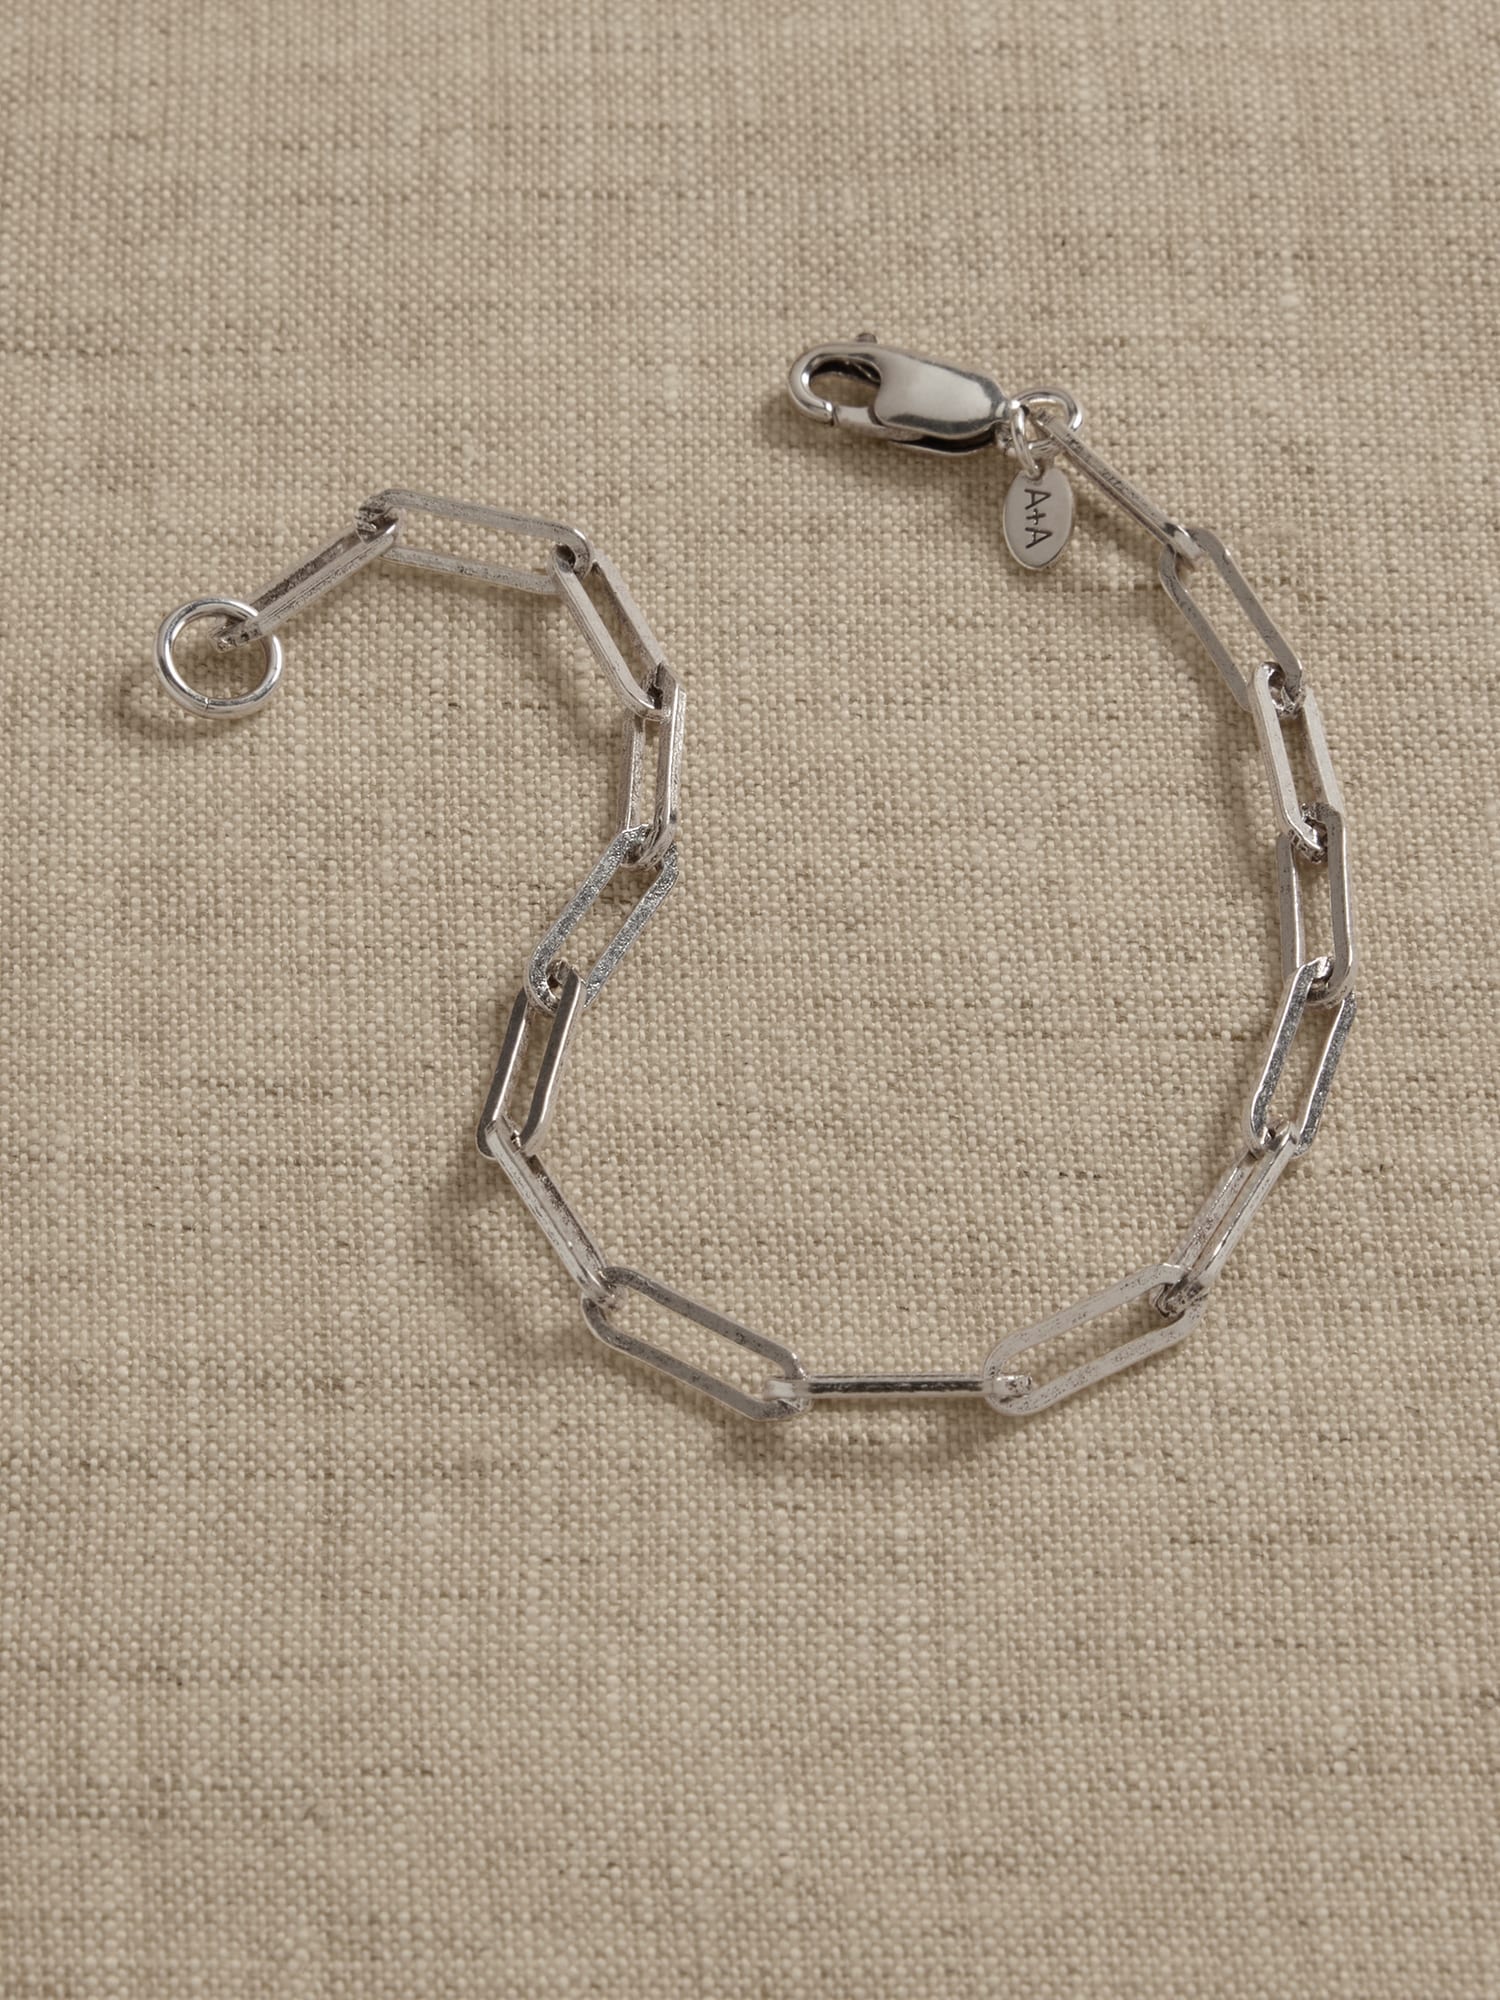 Ravena Paperclip Chain Bracelet | Aureus + Argent